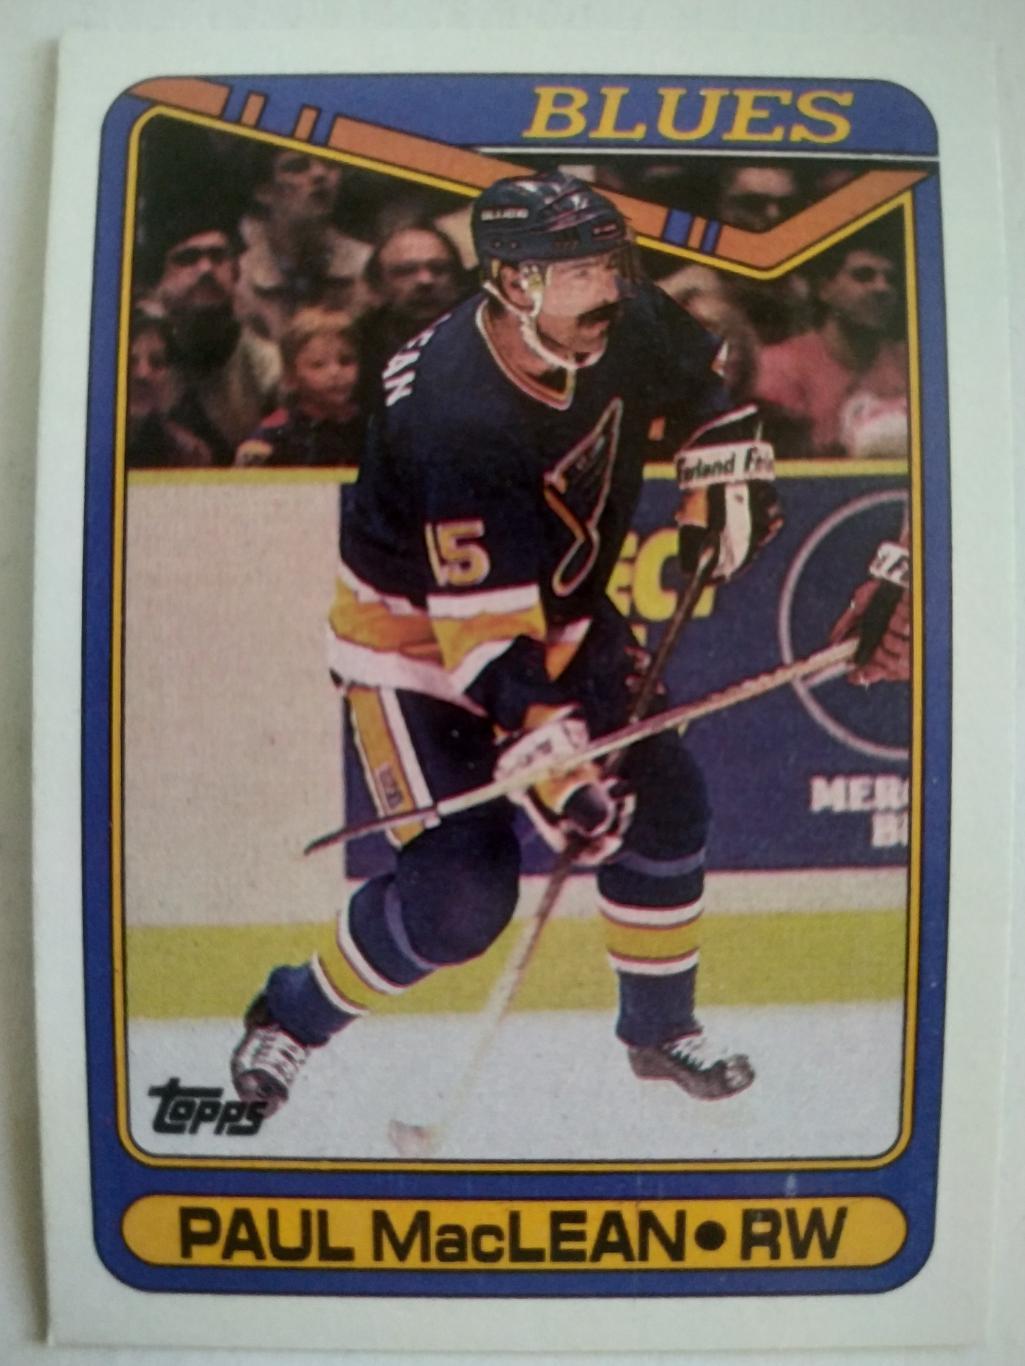 ХОККЕЙ КАРТОЧКА НХЛ TOPPS 1990-91 NHL PAUL MACLEAN ST. LOUIS BLUES #110